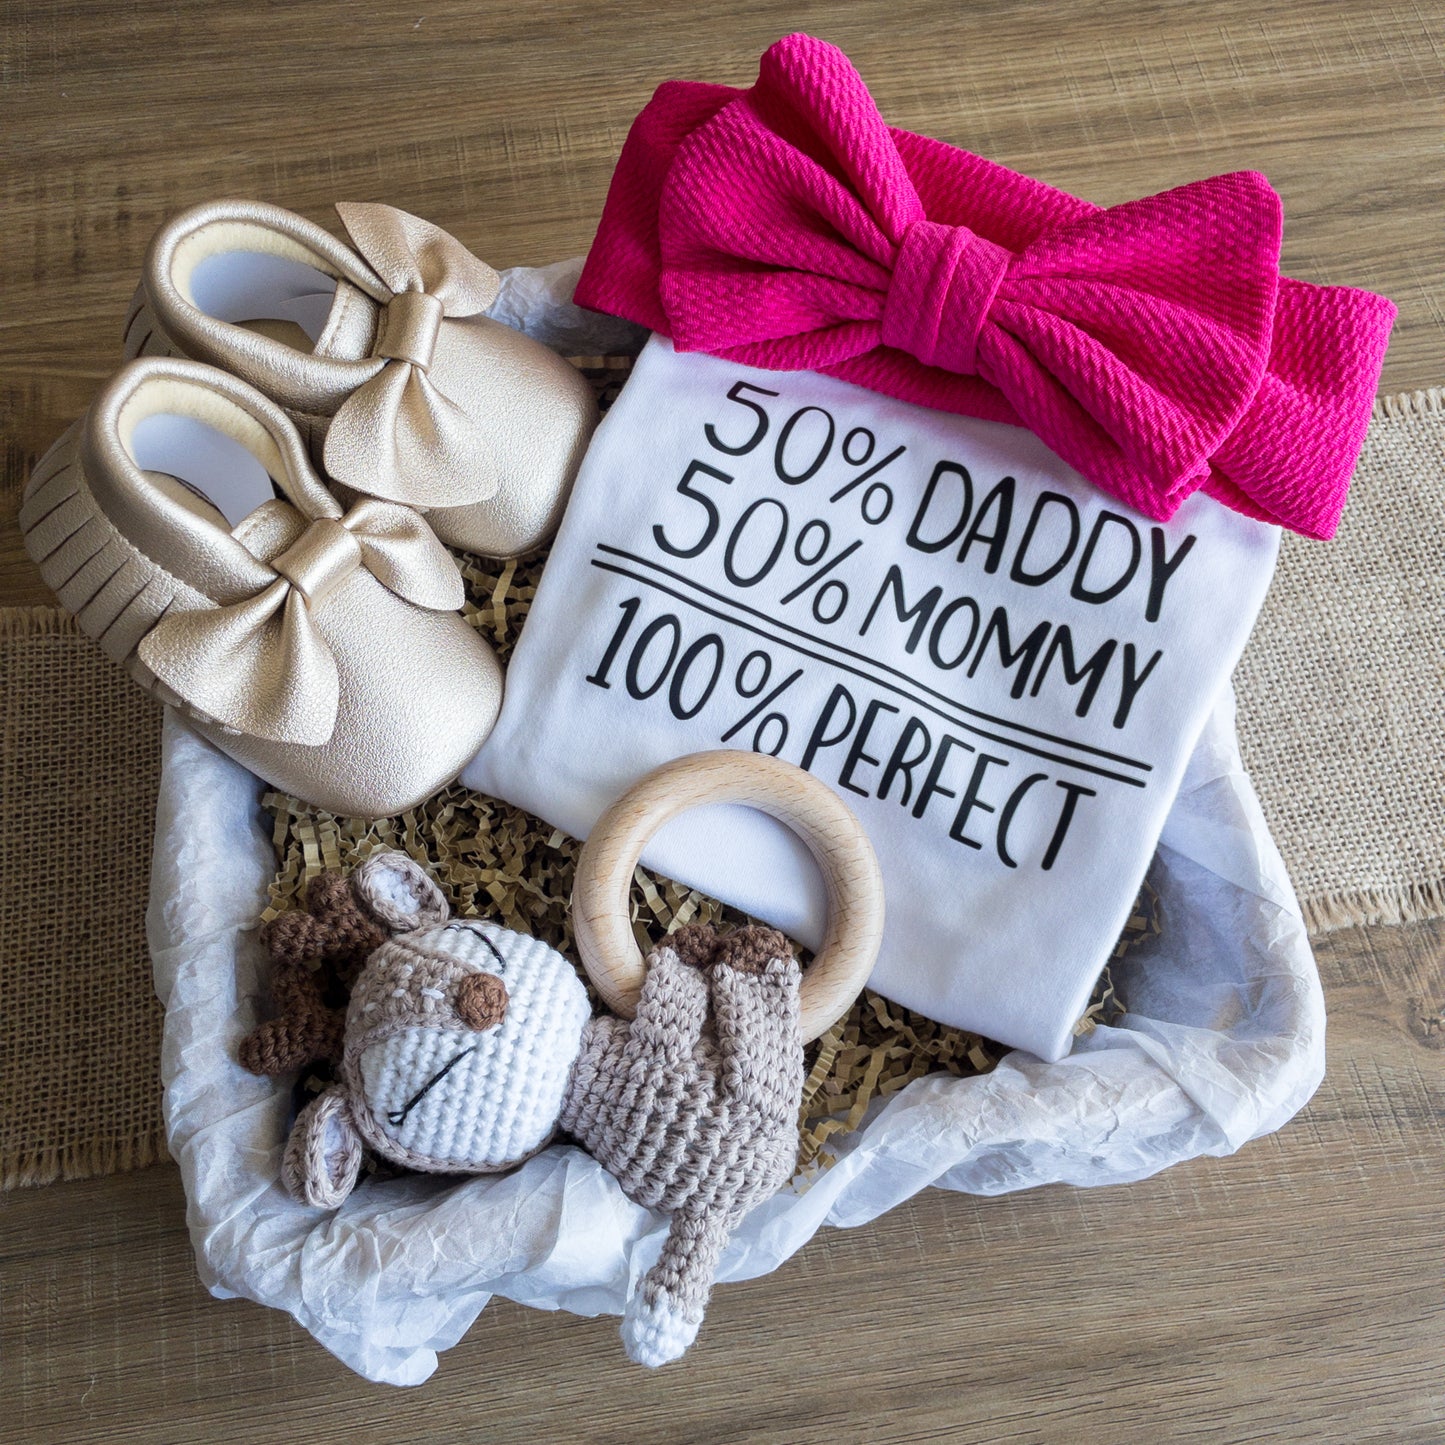 Set regalo per neonata con body scritta 50% daddy 50% mommy 100% perfect, sonaglio cerbiatto, scarpine mocassini oro e fascia con fiocco color fuchsia